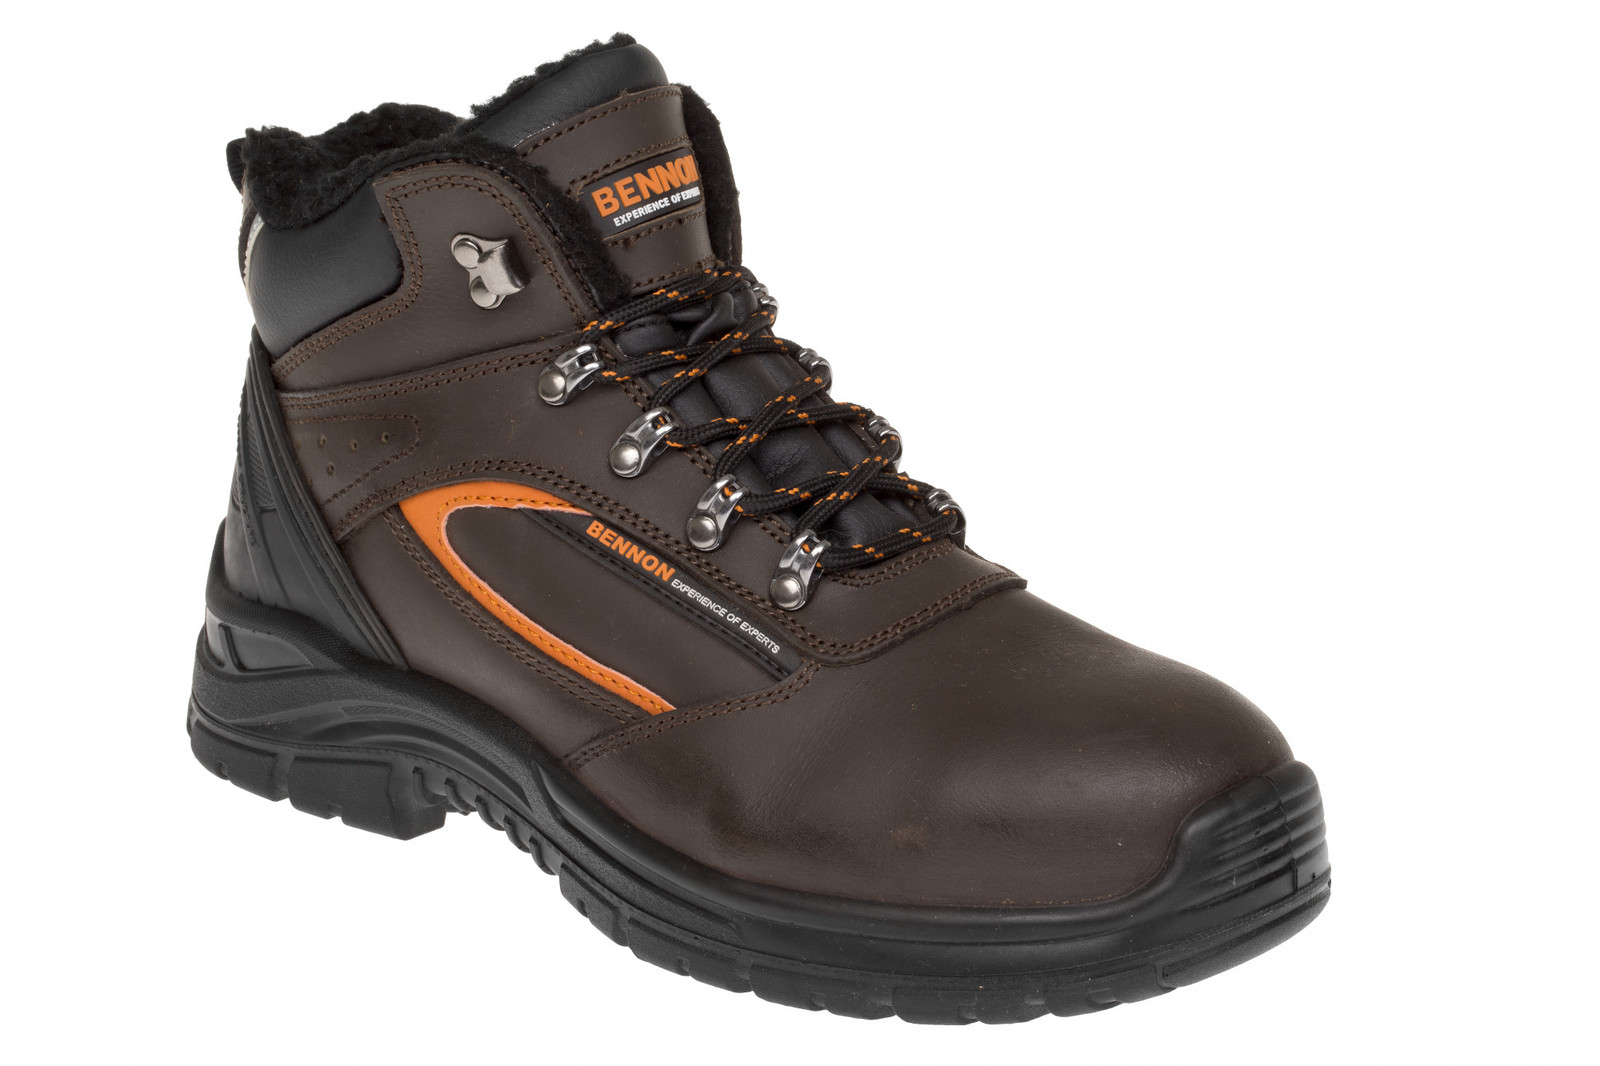 Zimná bezpečnostná obuv Bennon Farmis S3 Winter - veľkosť: 42, farba: hnedá